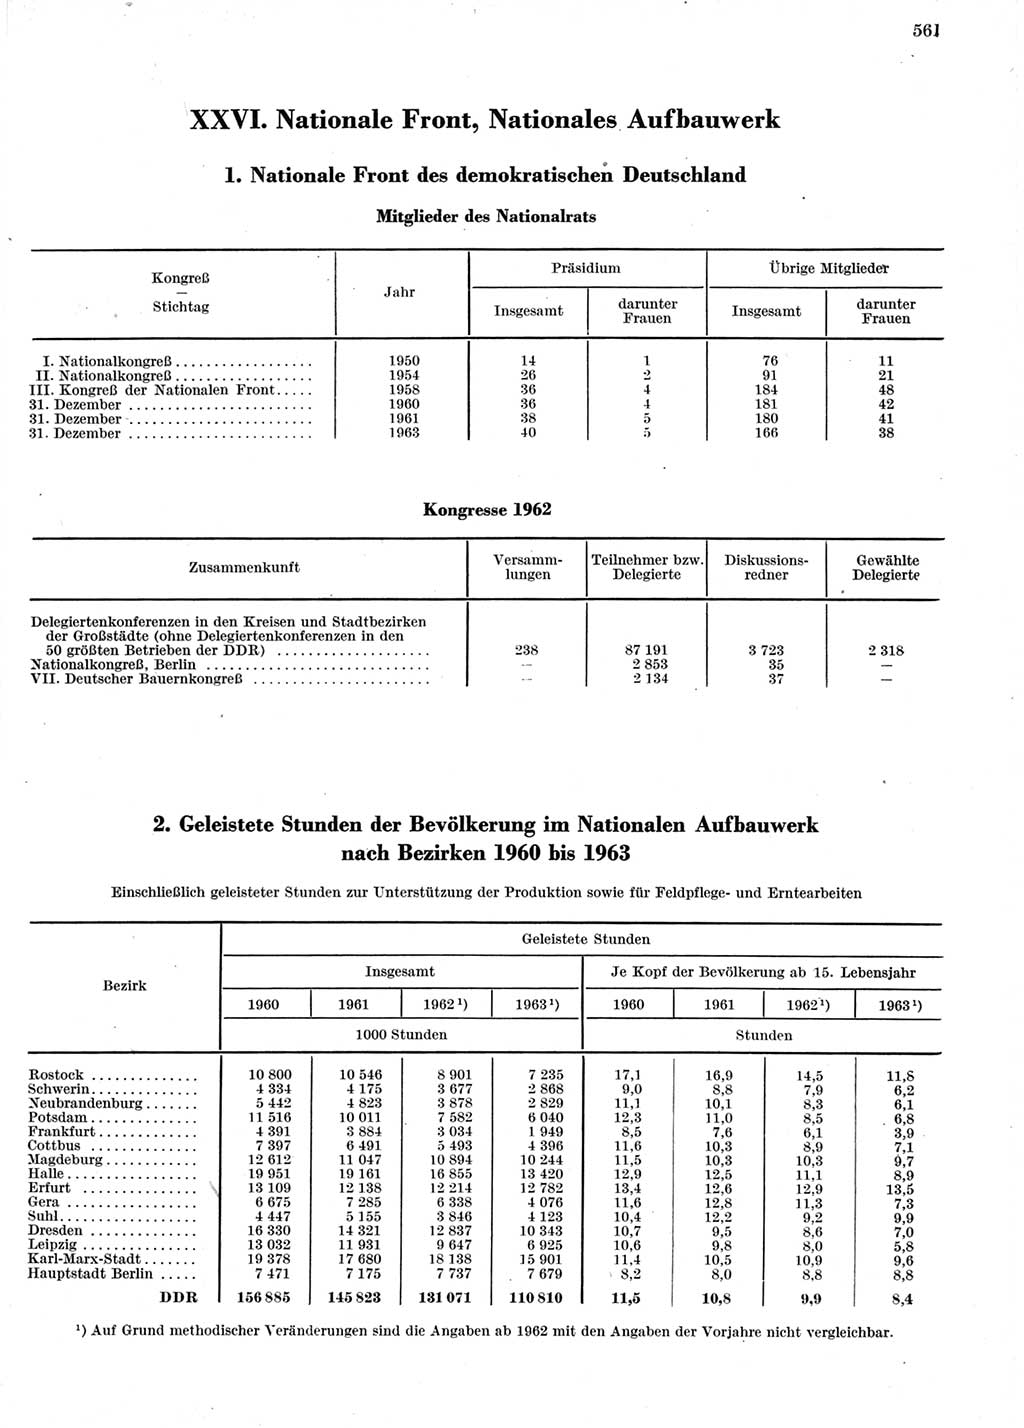 Statistisches Jahrbuch der Deutschen Demokratischen Republik (DDR) 1964, Seite 561 (Stat. Jb. DDR 1964, S. 561)